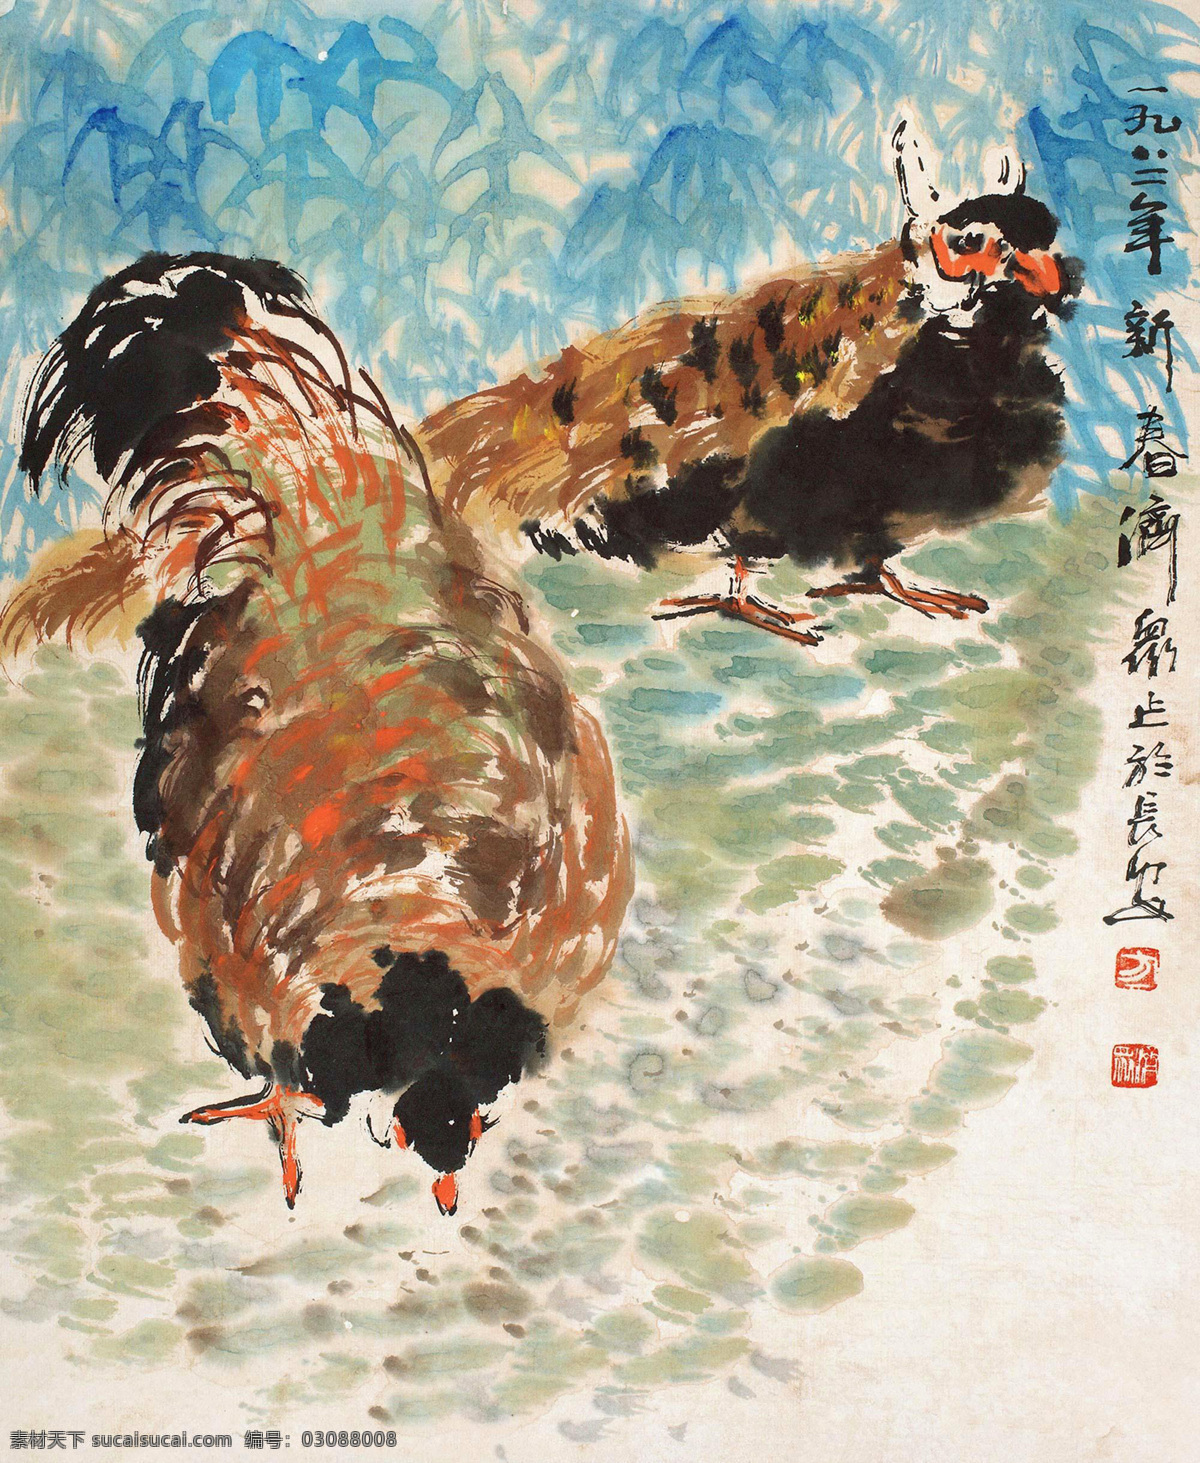 国画 绘画书法 母鸡 文化艺术 双吉设计素材 双吉模板下载 双吉 方济众 芦花鸡 长安画派 国画方济众